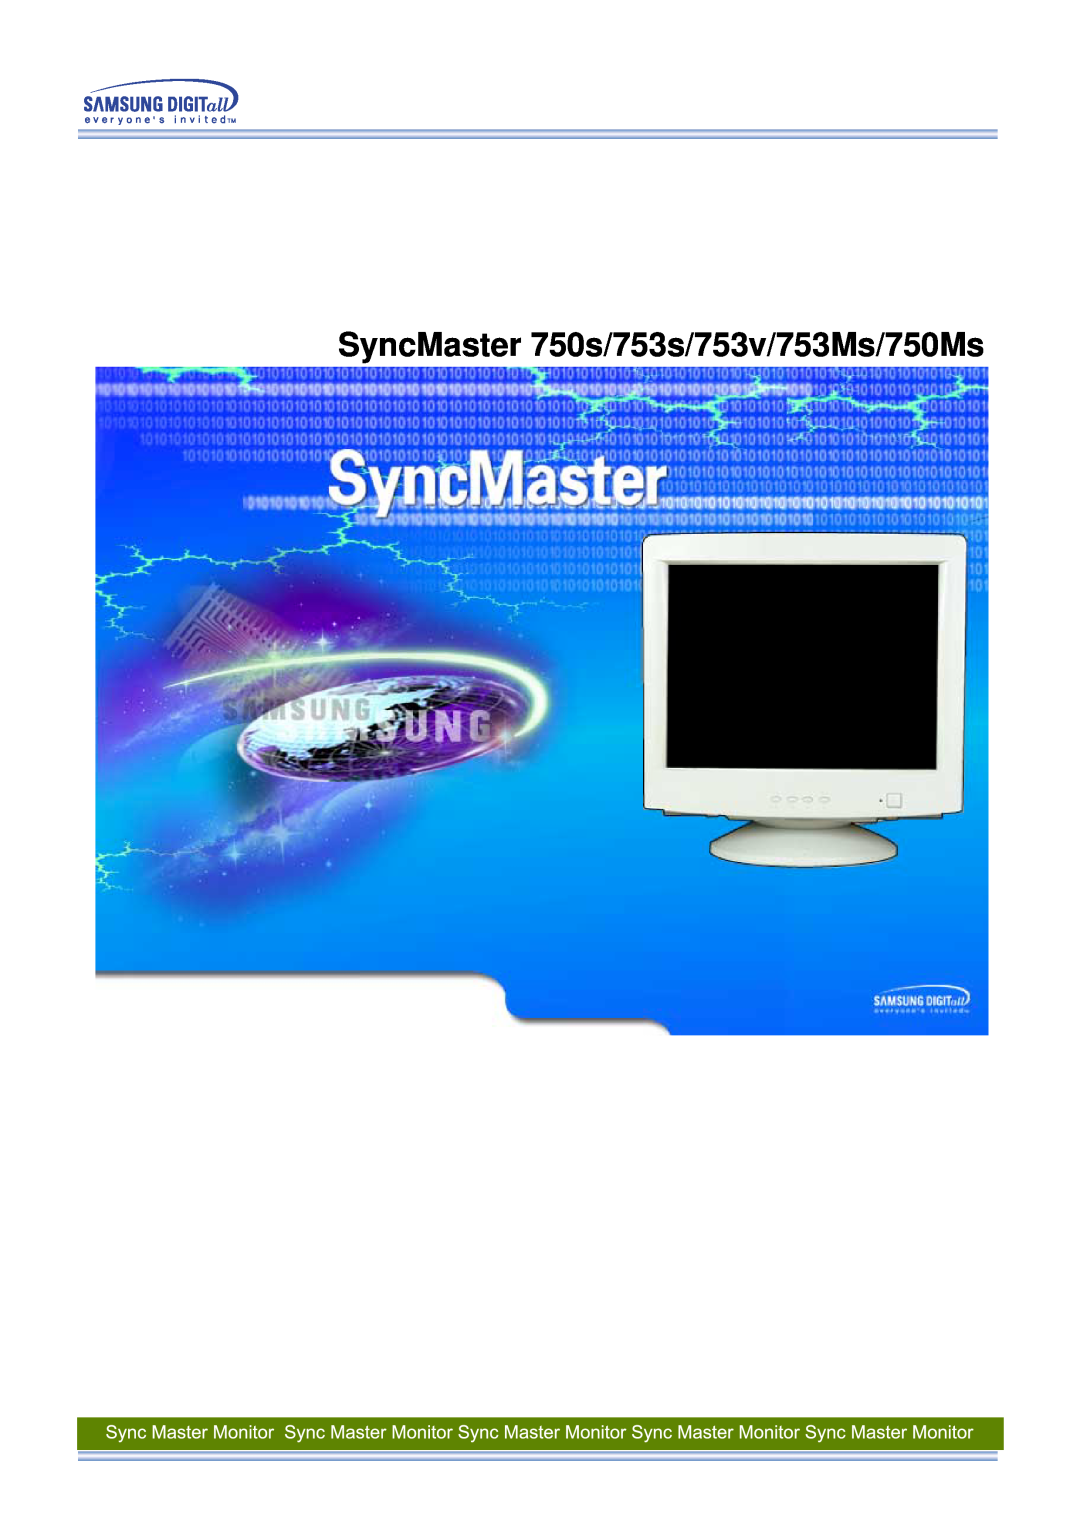 Samsung 750s, 753s, 753v, 753Ms, 750Ms manual SyncMaster 750s/753s/753v/753Ms/750Ms 